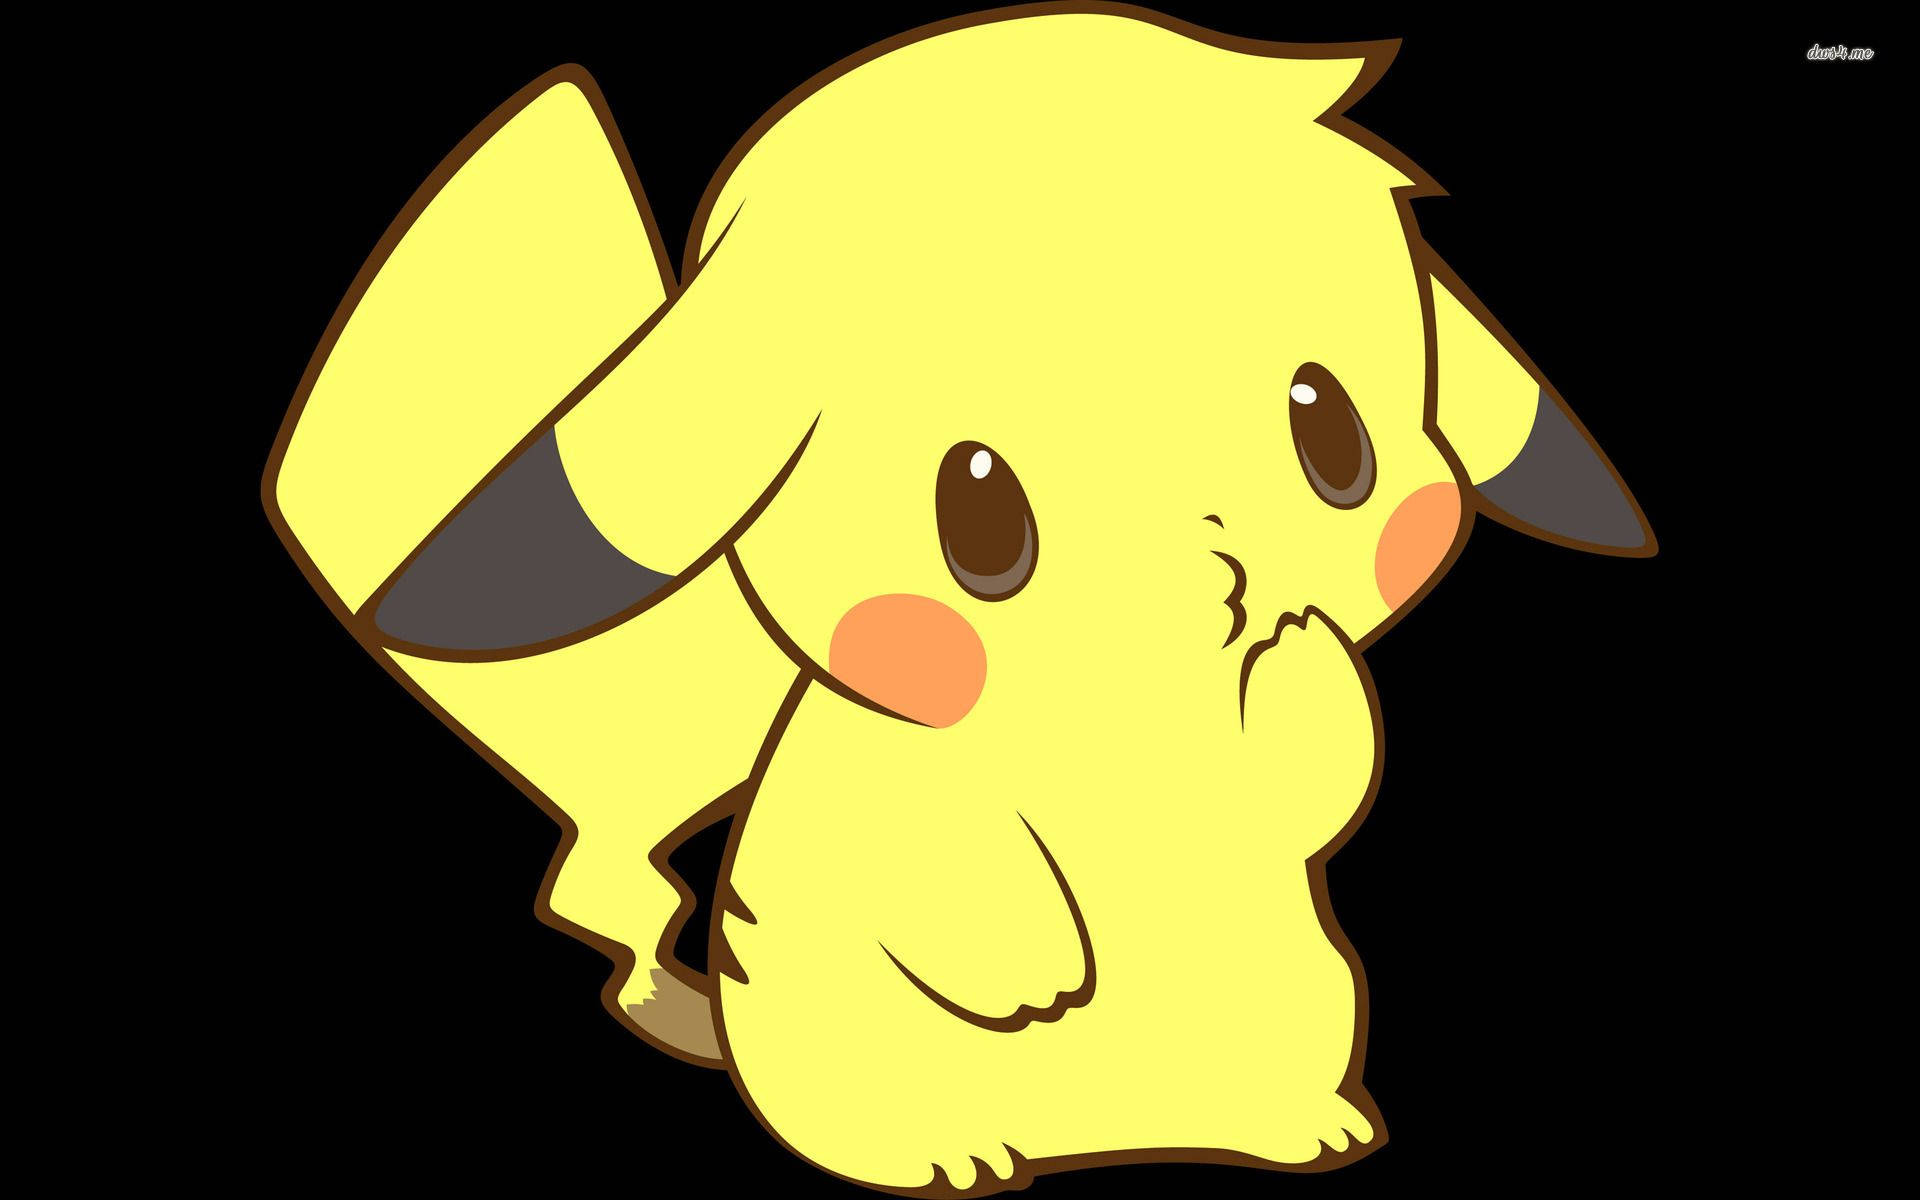 Cute Pikachu Art Wallpaper